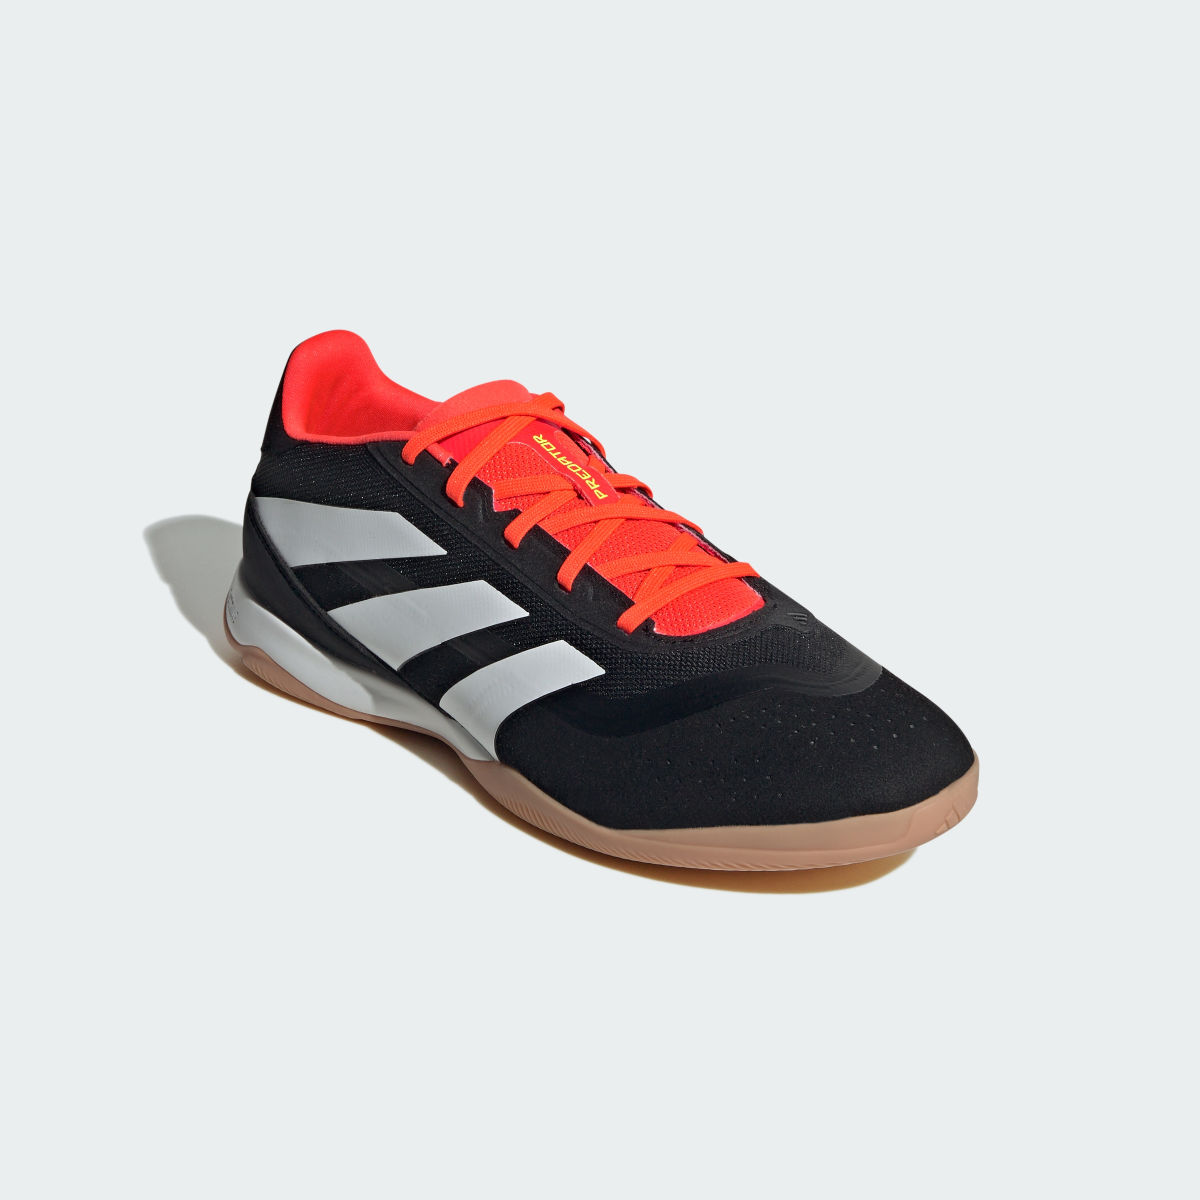 Adidas Predator League Indoor Football Boots. 5